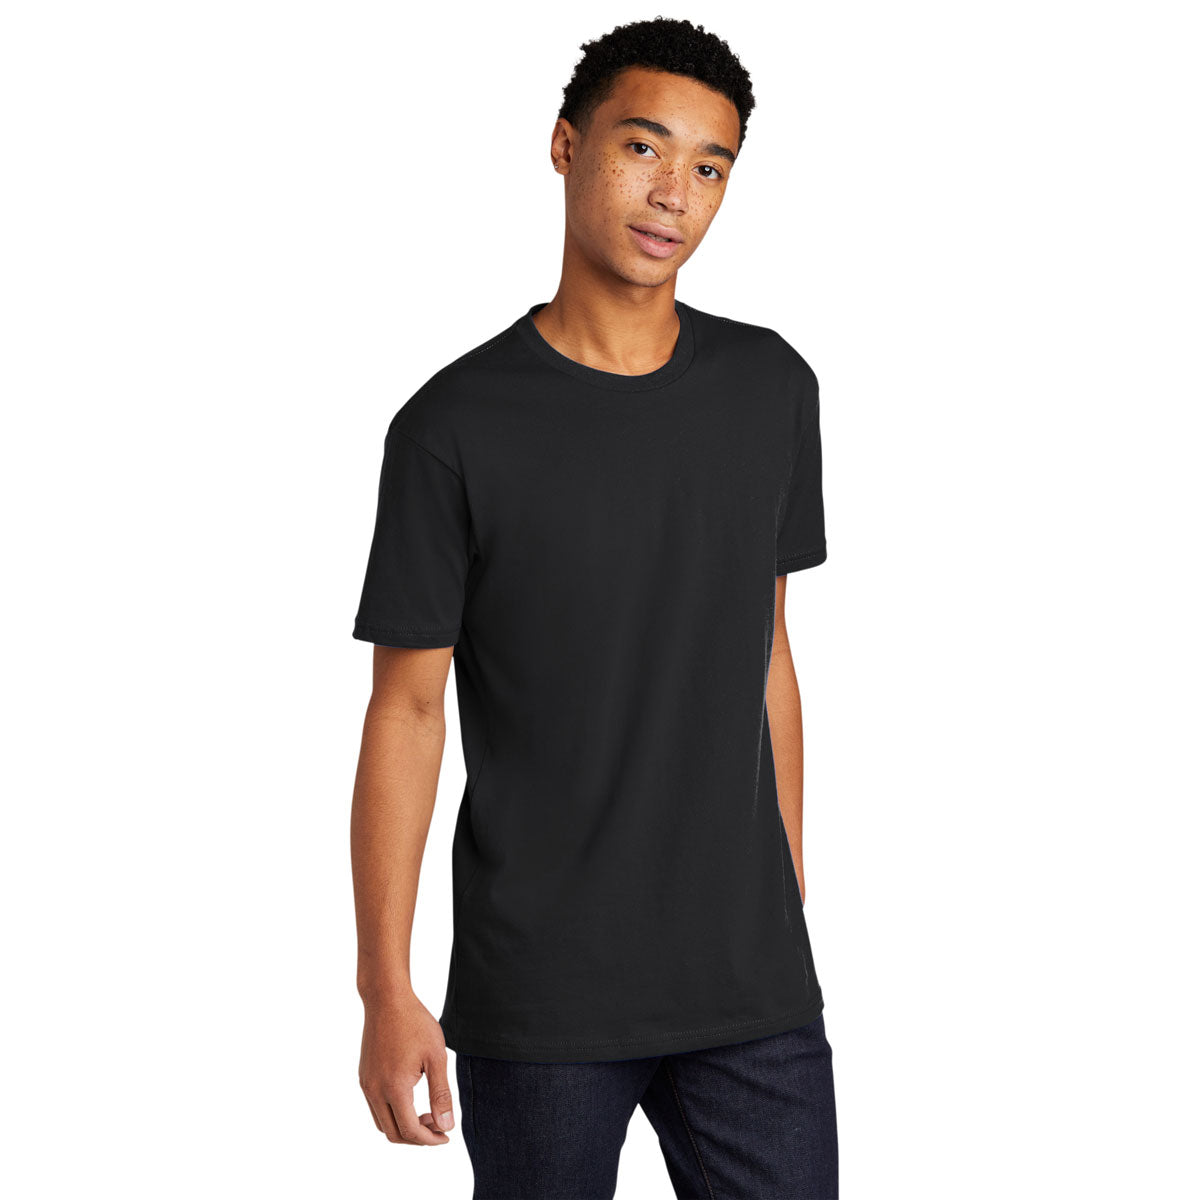 Buy Black Tshirts for Men by Grimelange Online